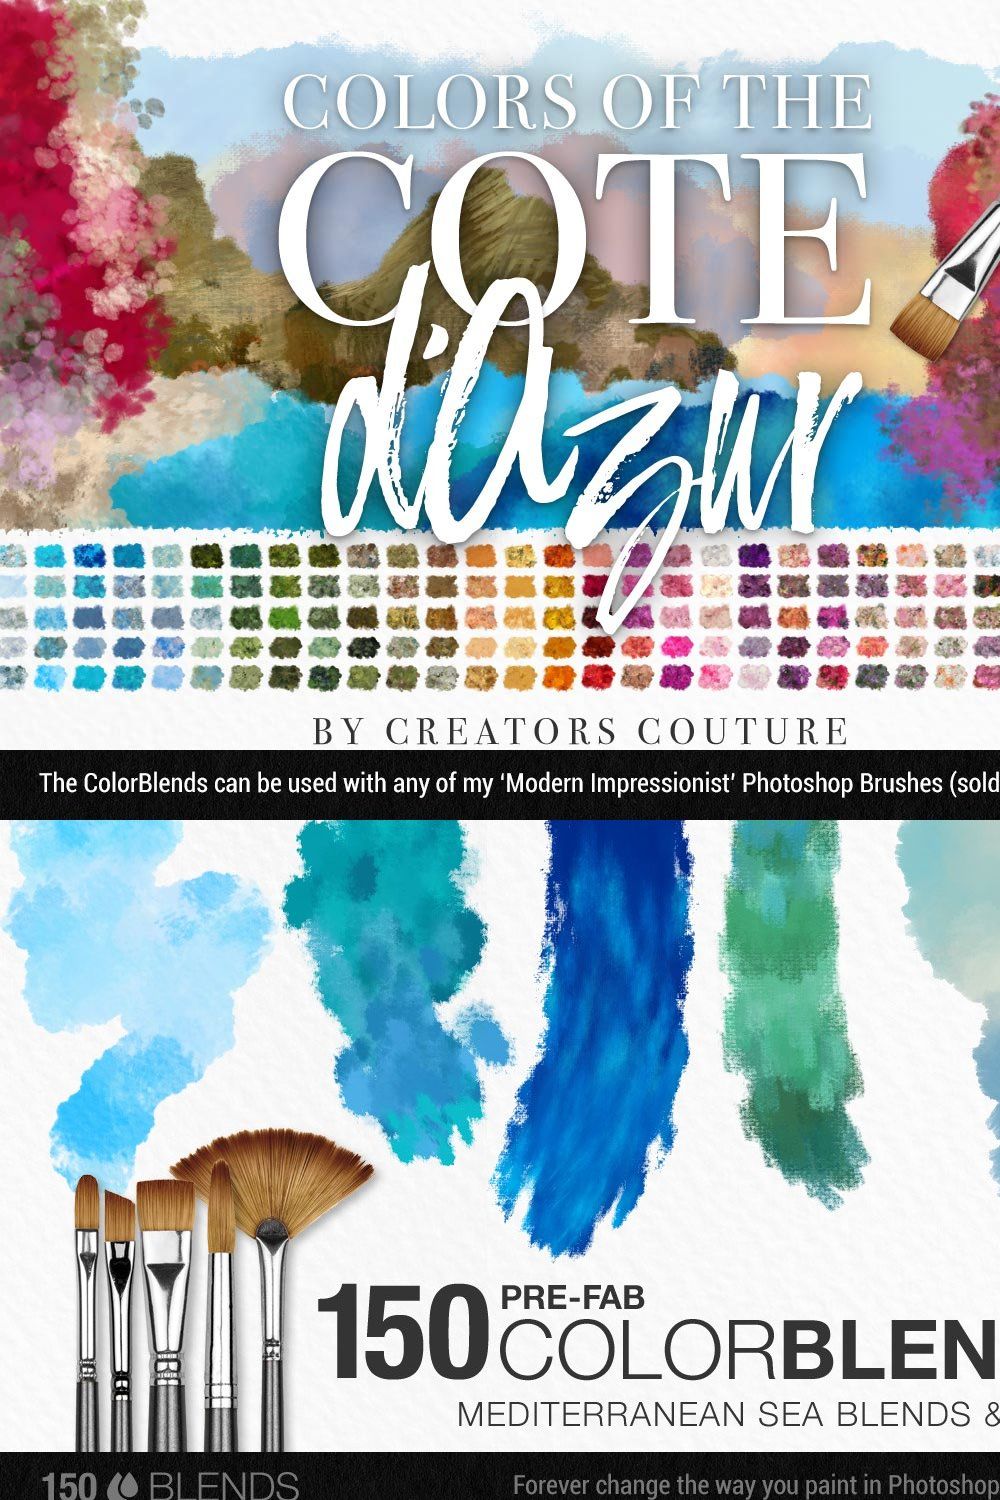 Colors of the Côte d'Azur pinterest preview image.